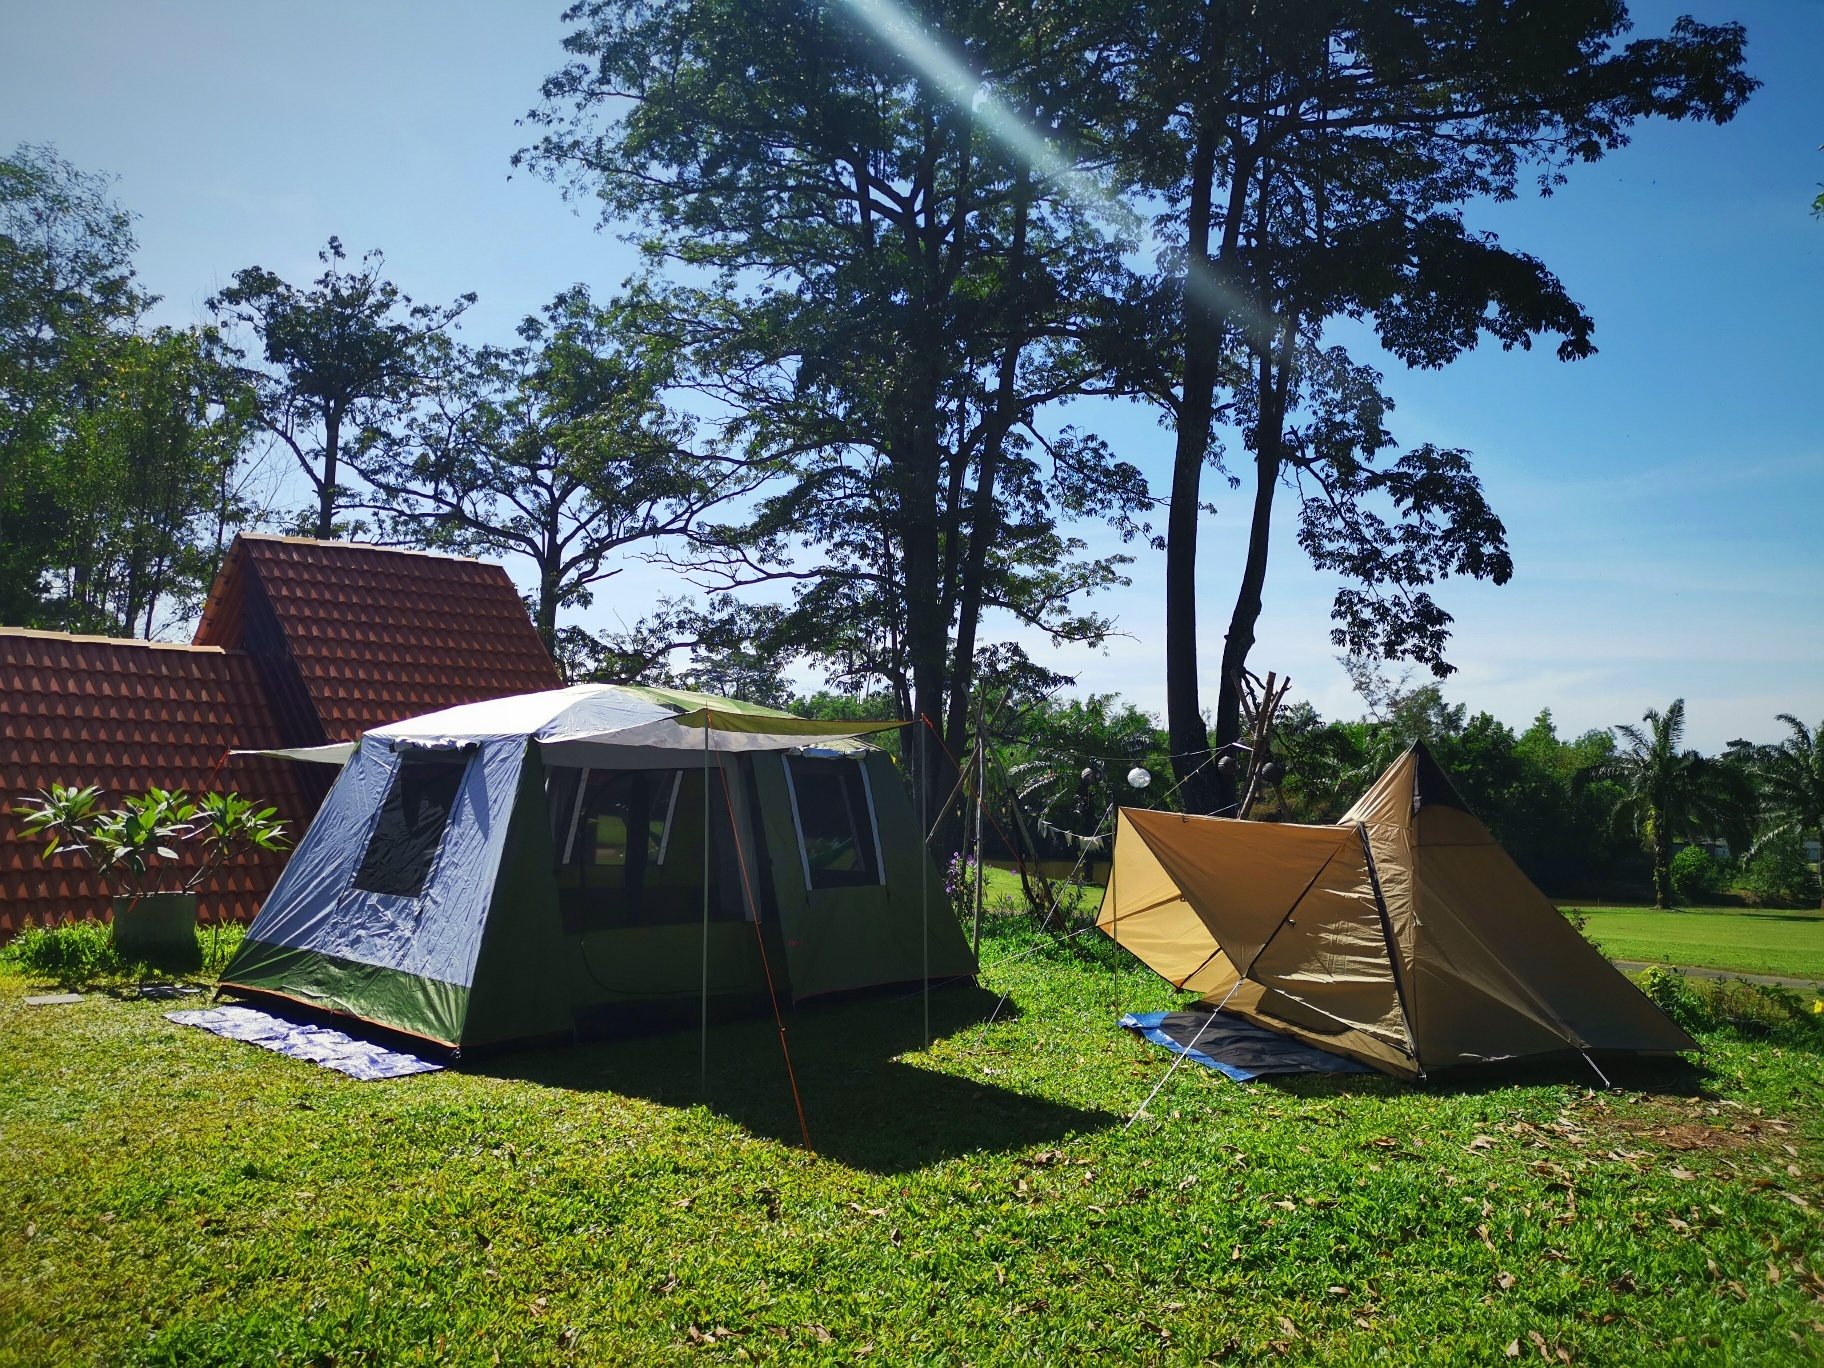 Park campsite sebarau (2022) 10